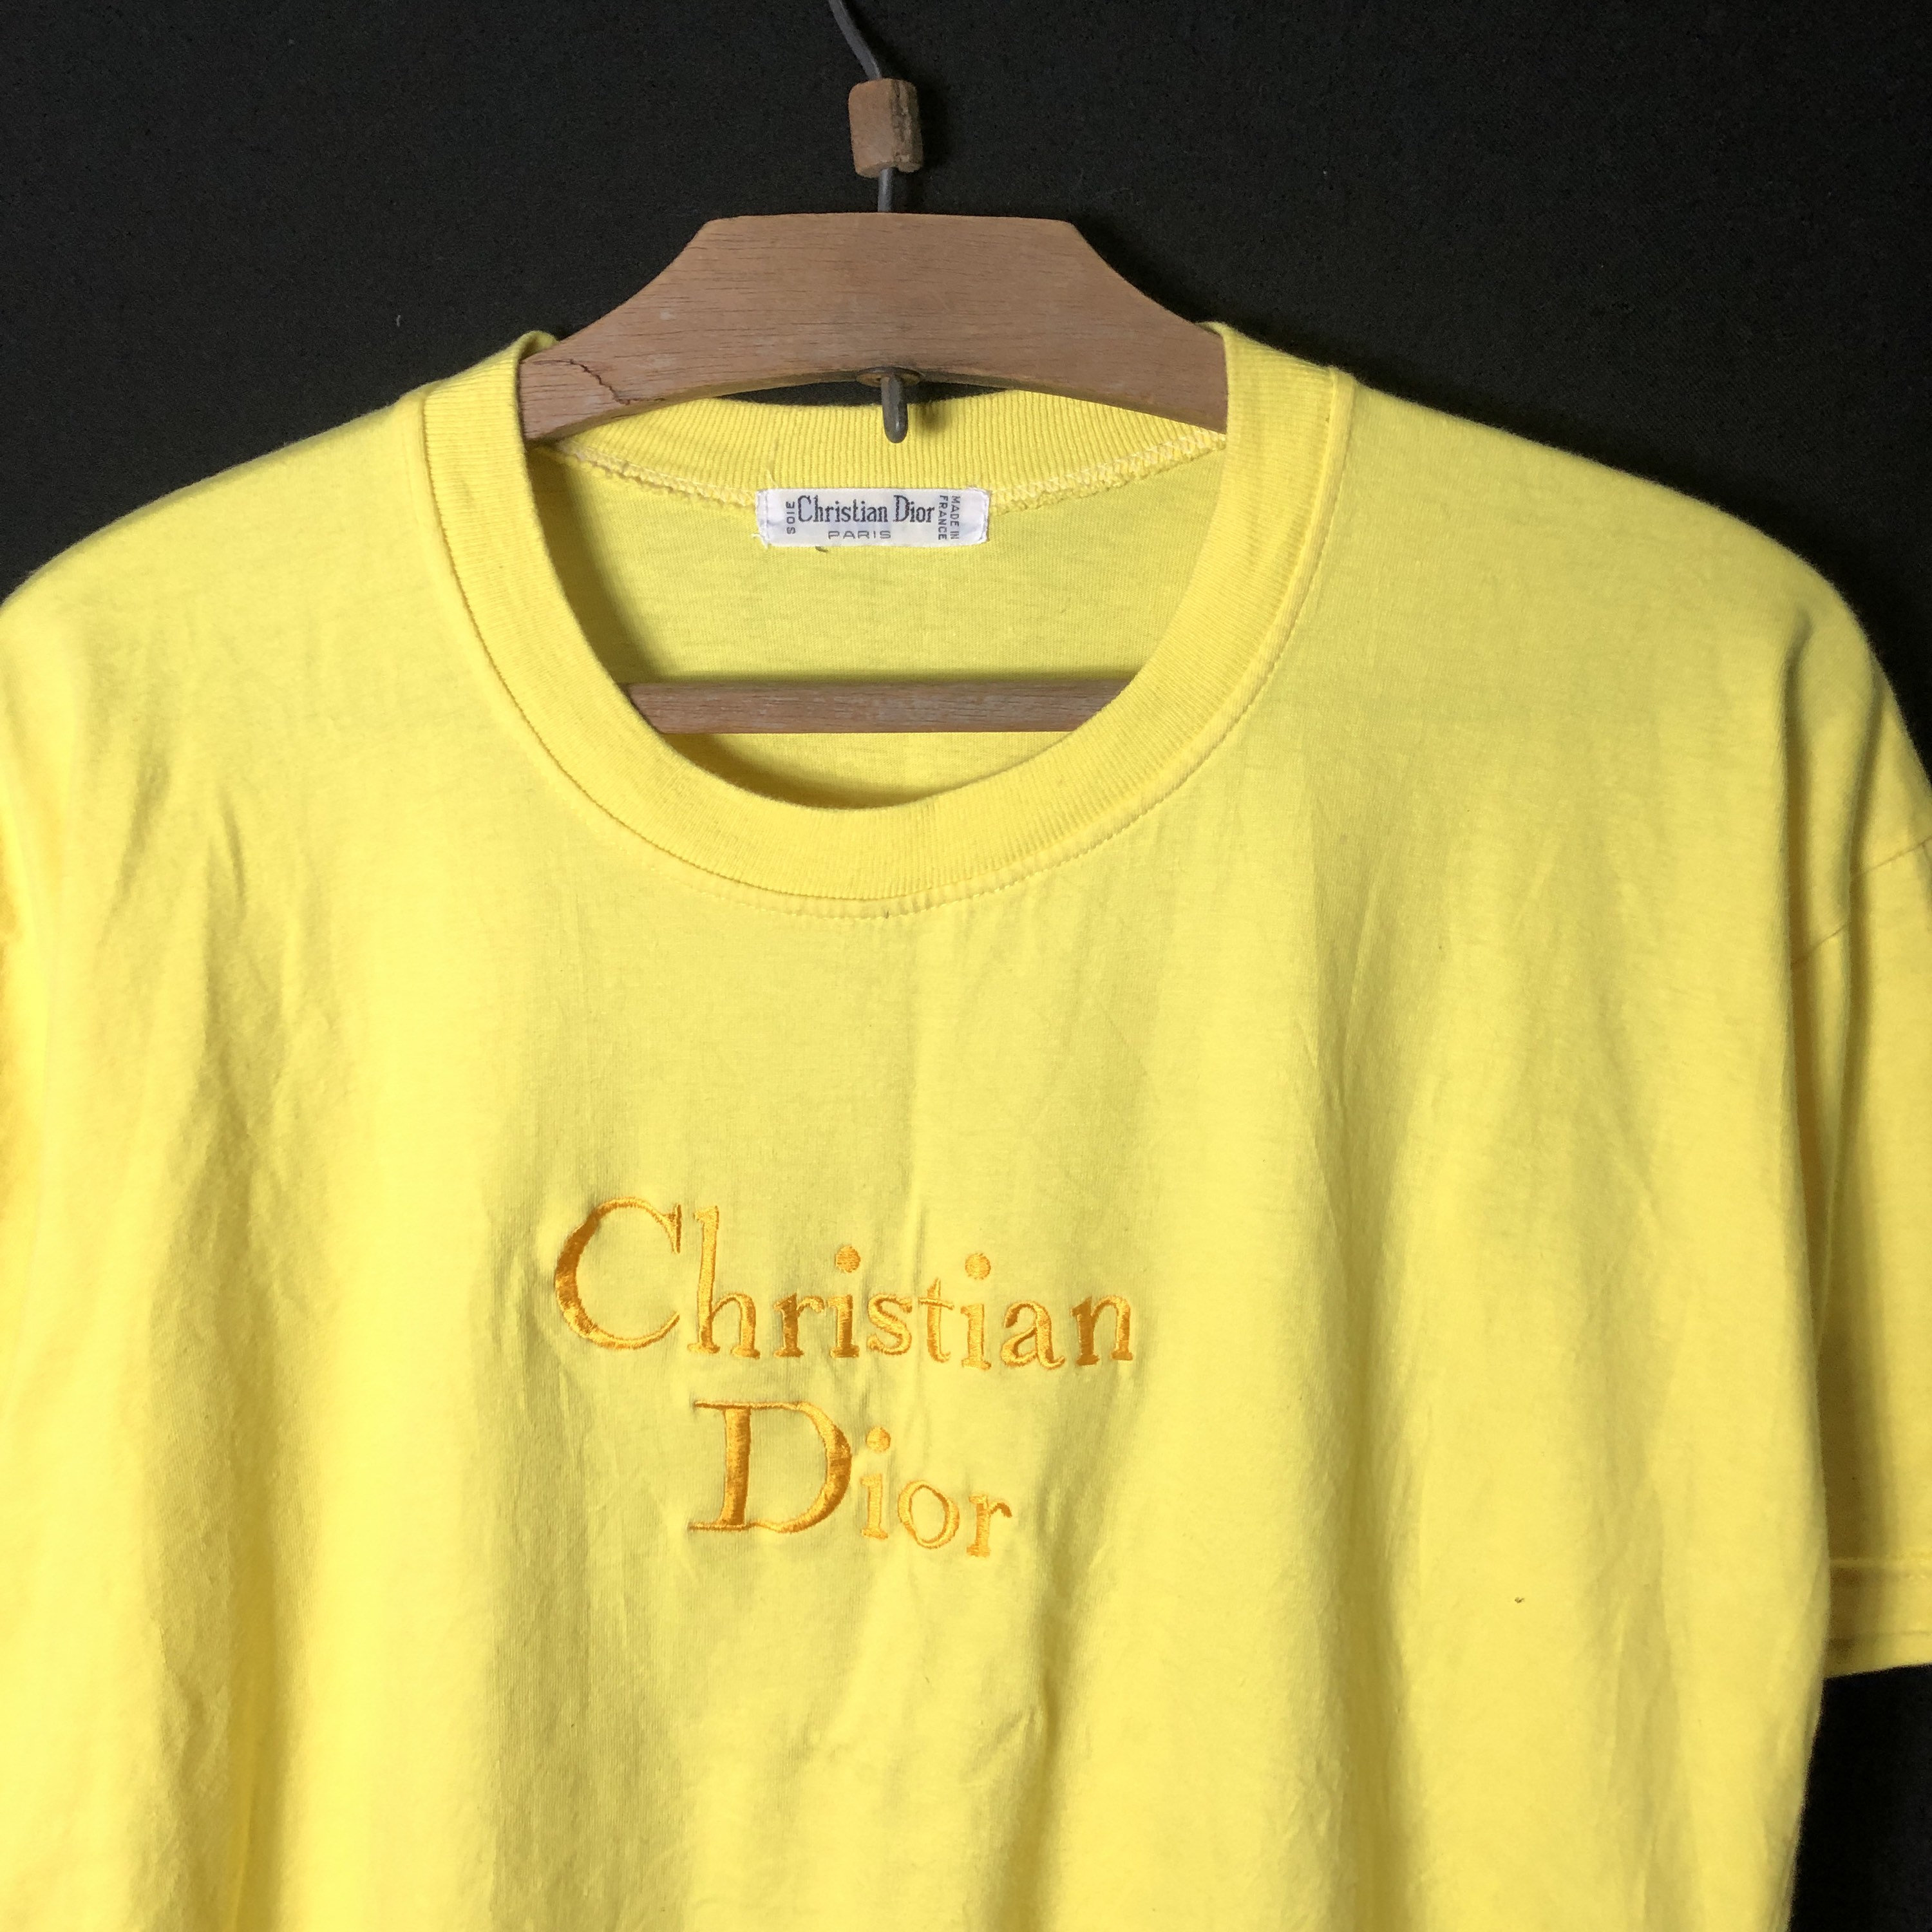 Christian Dior Herren Tshirt original in Aachen  AachenMitte  eBay  Kleinanzeigen